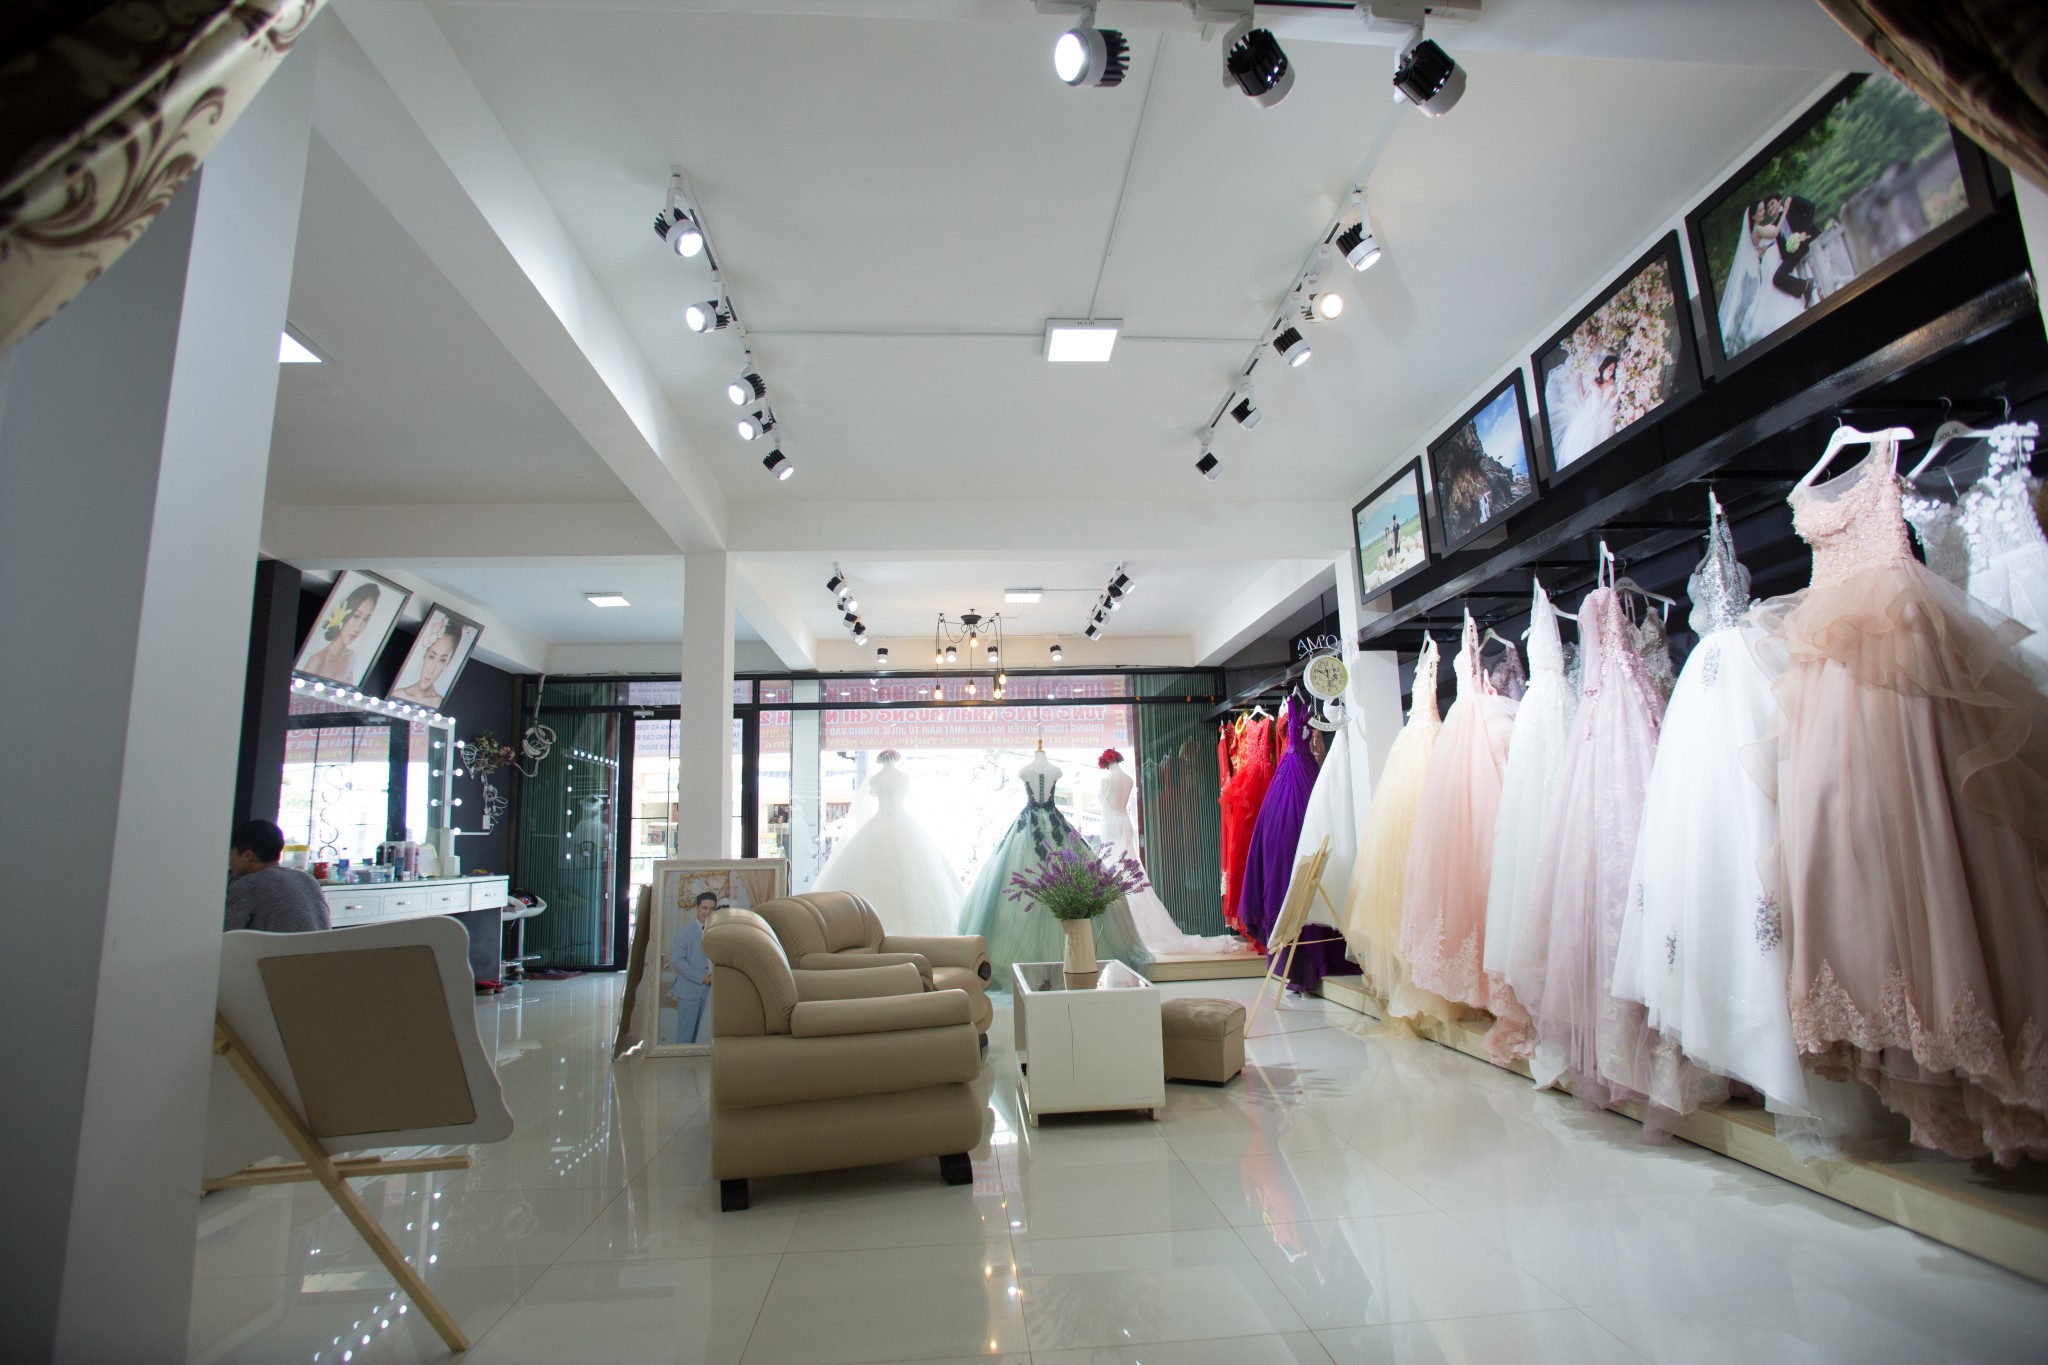 Mở cửa hàng áo cưới cần chuẩn bị những gì? (P2)